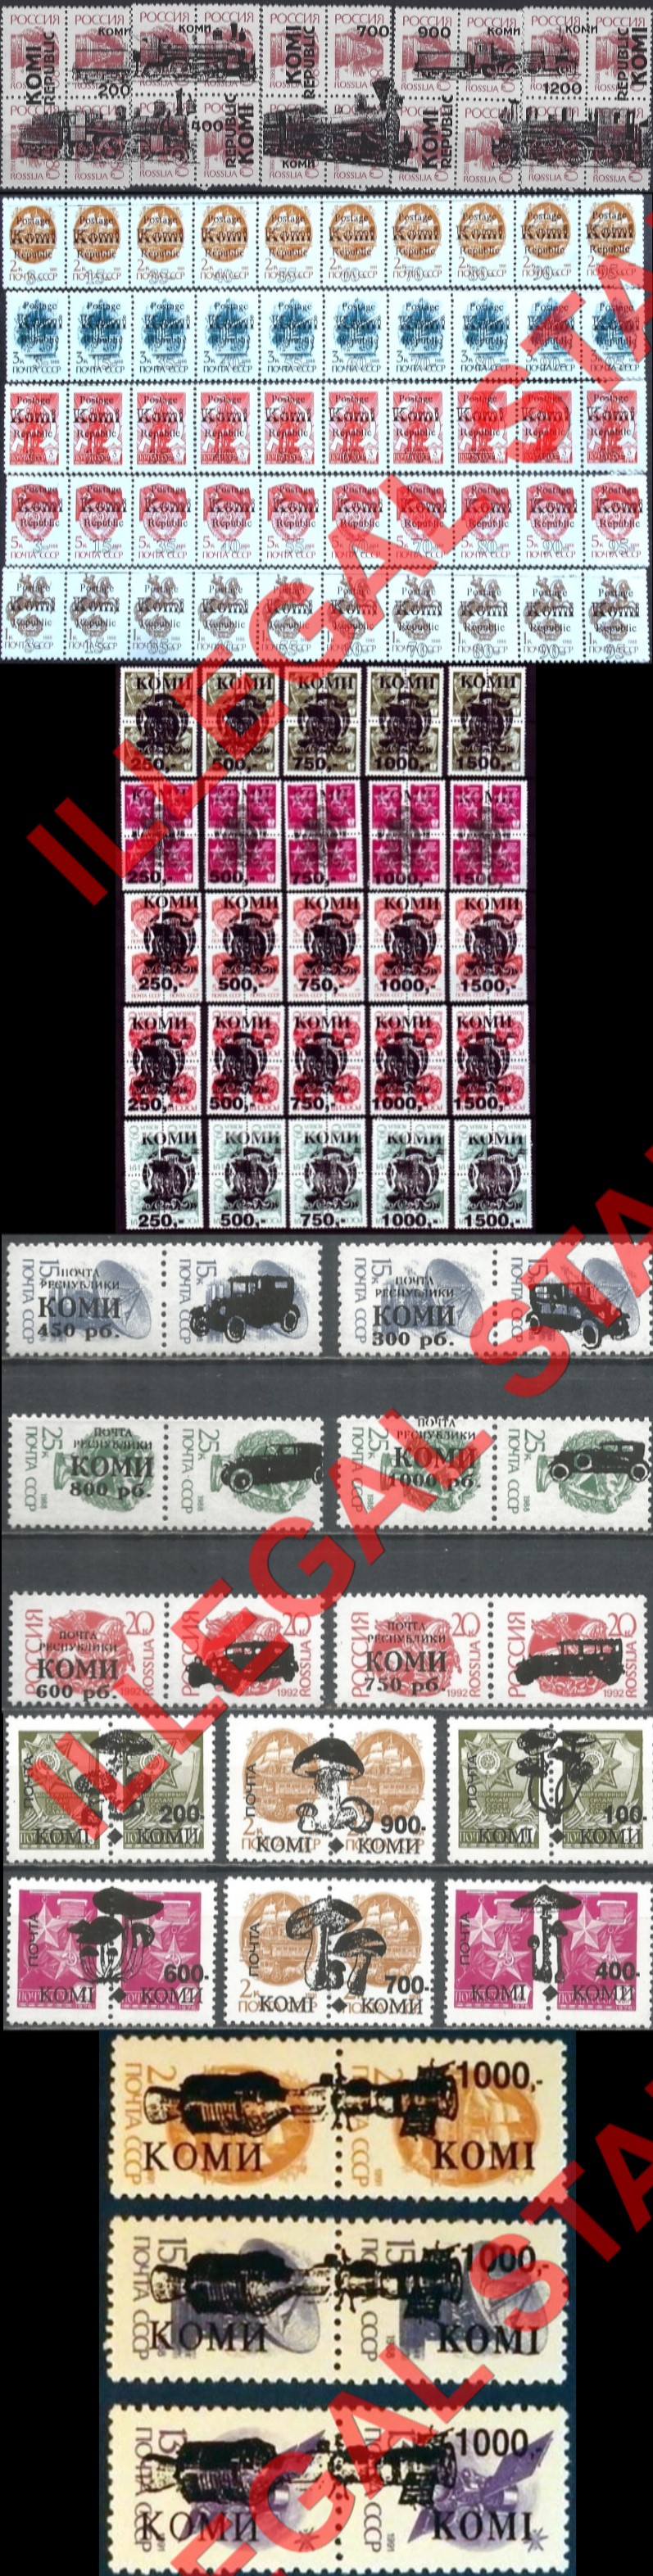 Komi Republic 1992-6 Counterfeit Illegal Stamps